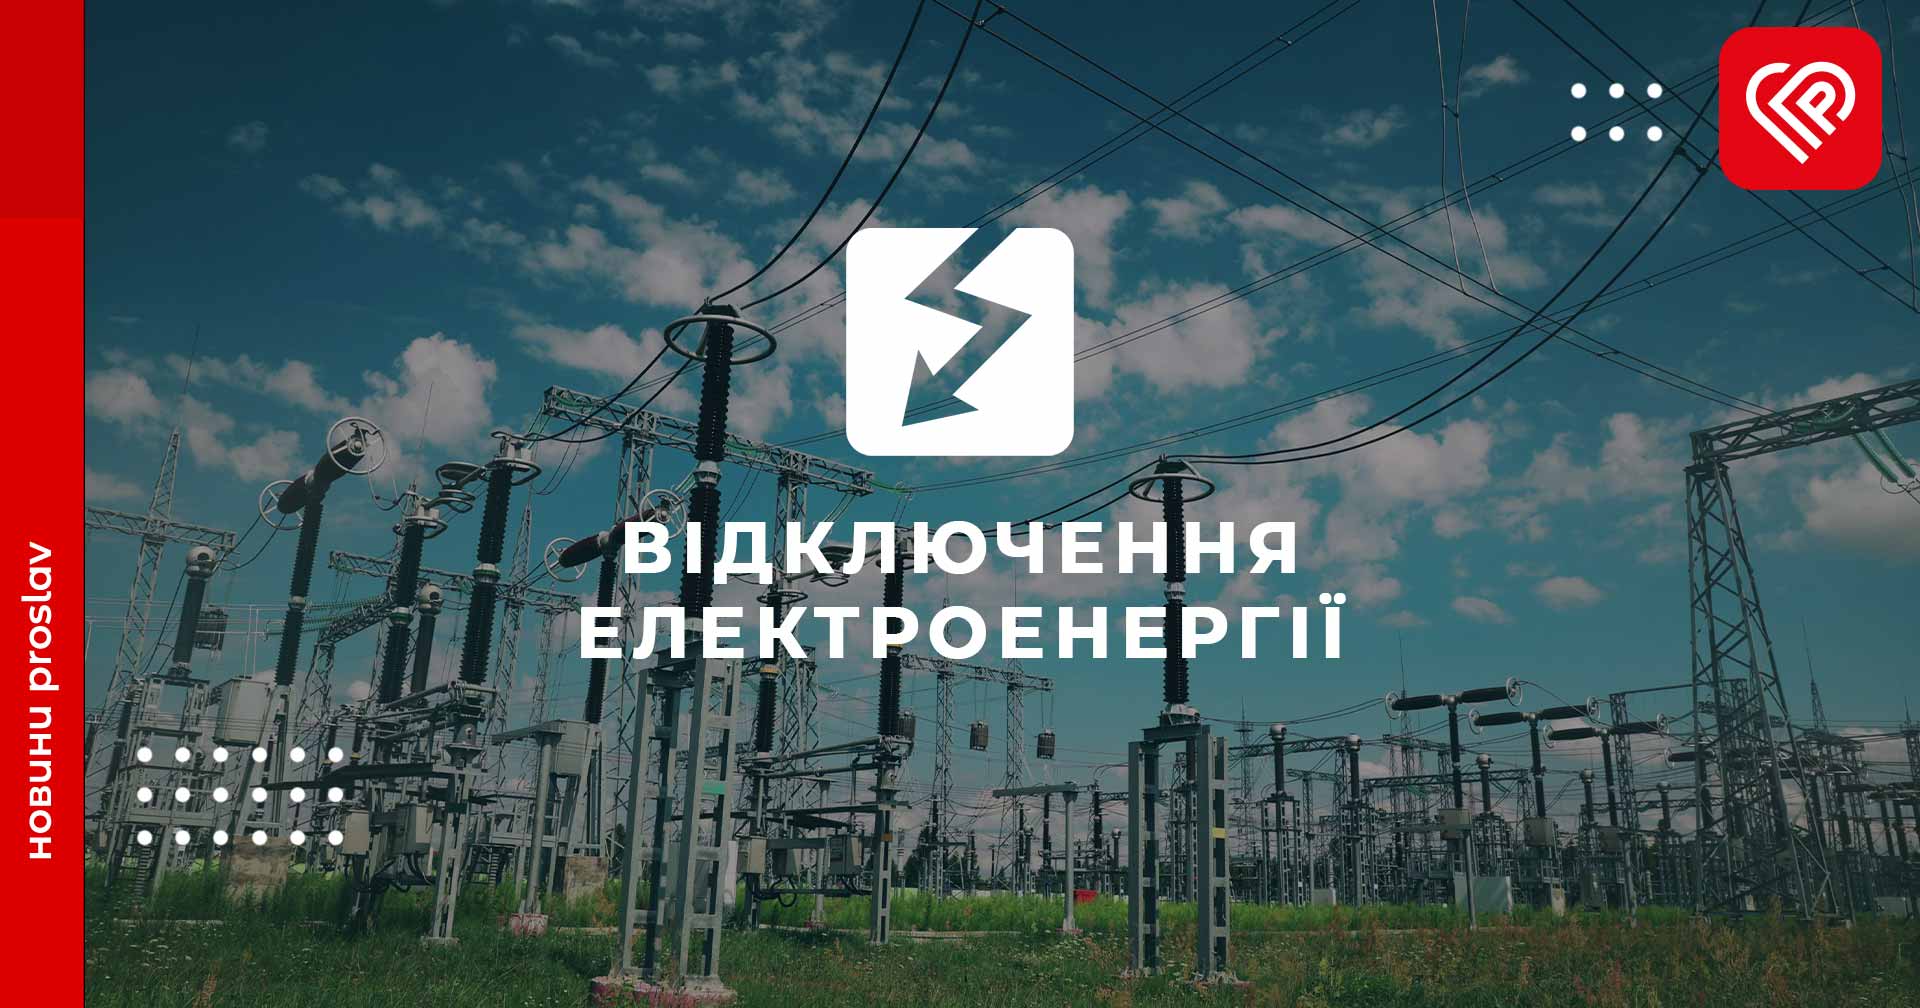 Третього травня на Переяславщині відбудеться планове відключення електроенергії: перелік населених пунктів та графік